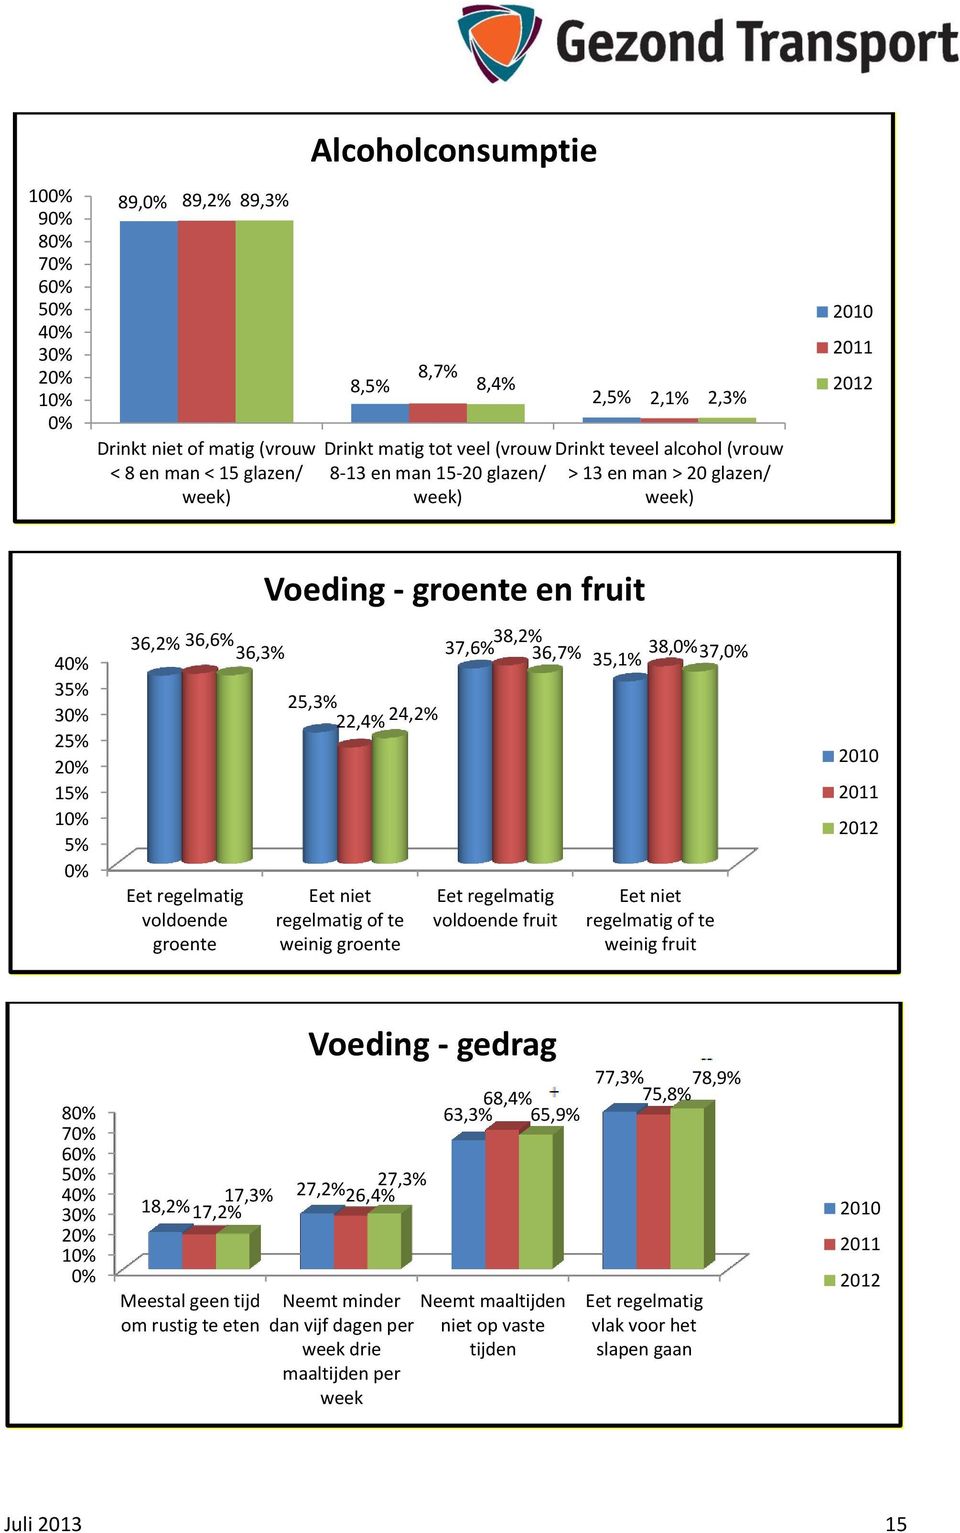 groente en fruit 25,3% 22,4% 24,2% Eet niet regelmatig of te weinig groente 38,2% 37,6% 36,7% 38,0% 35,1% 37,0% Eet regelmatig voldoende fruit Eet niet regelmatig of te weinig fruit 2010 2011 2012